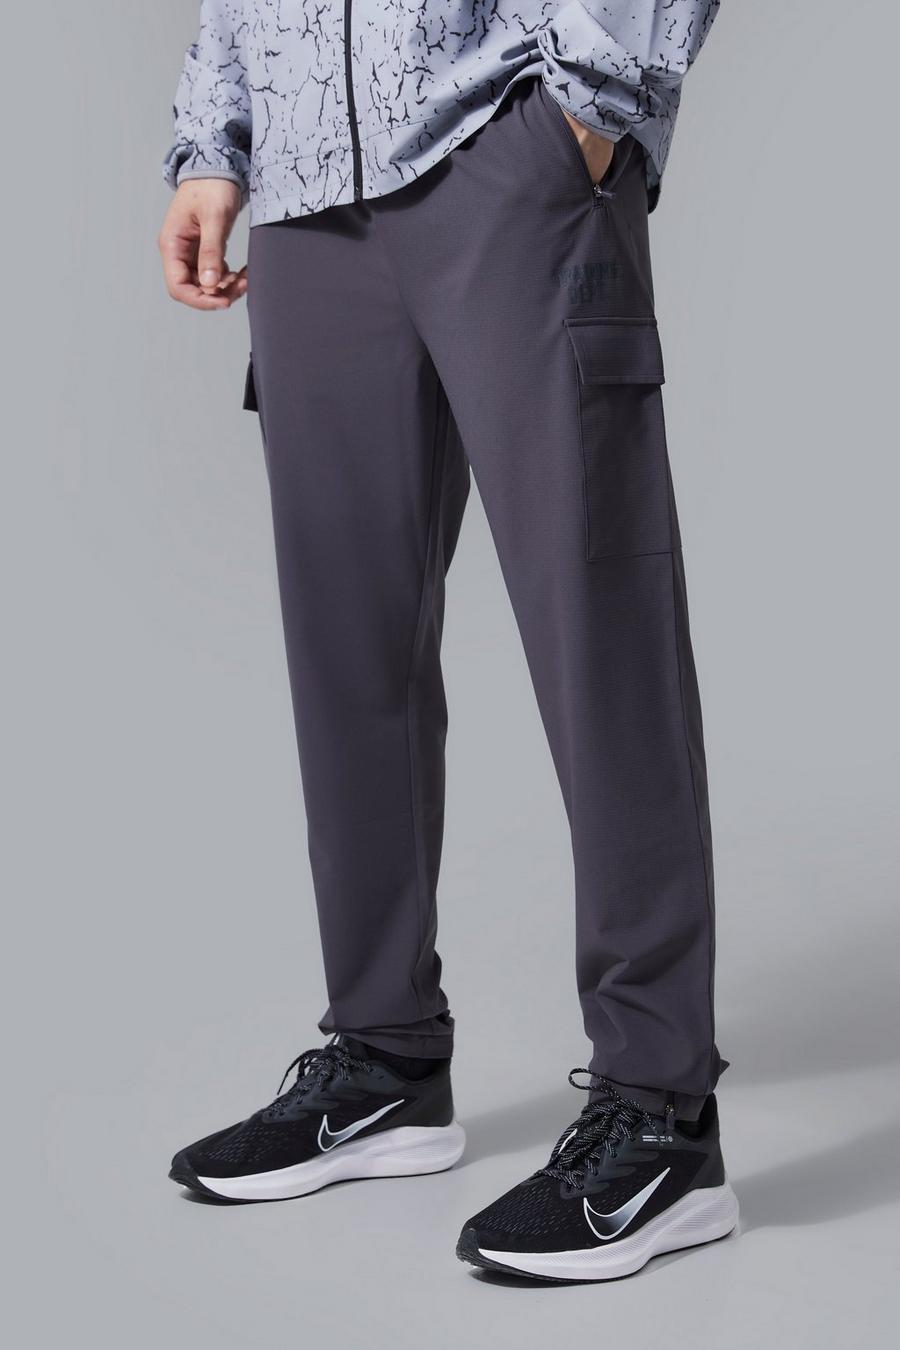 Pantalón deportivo Tall Active cargo ajustado, Charcoal image number 1